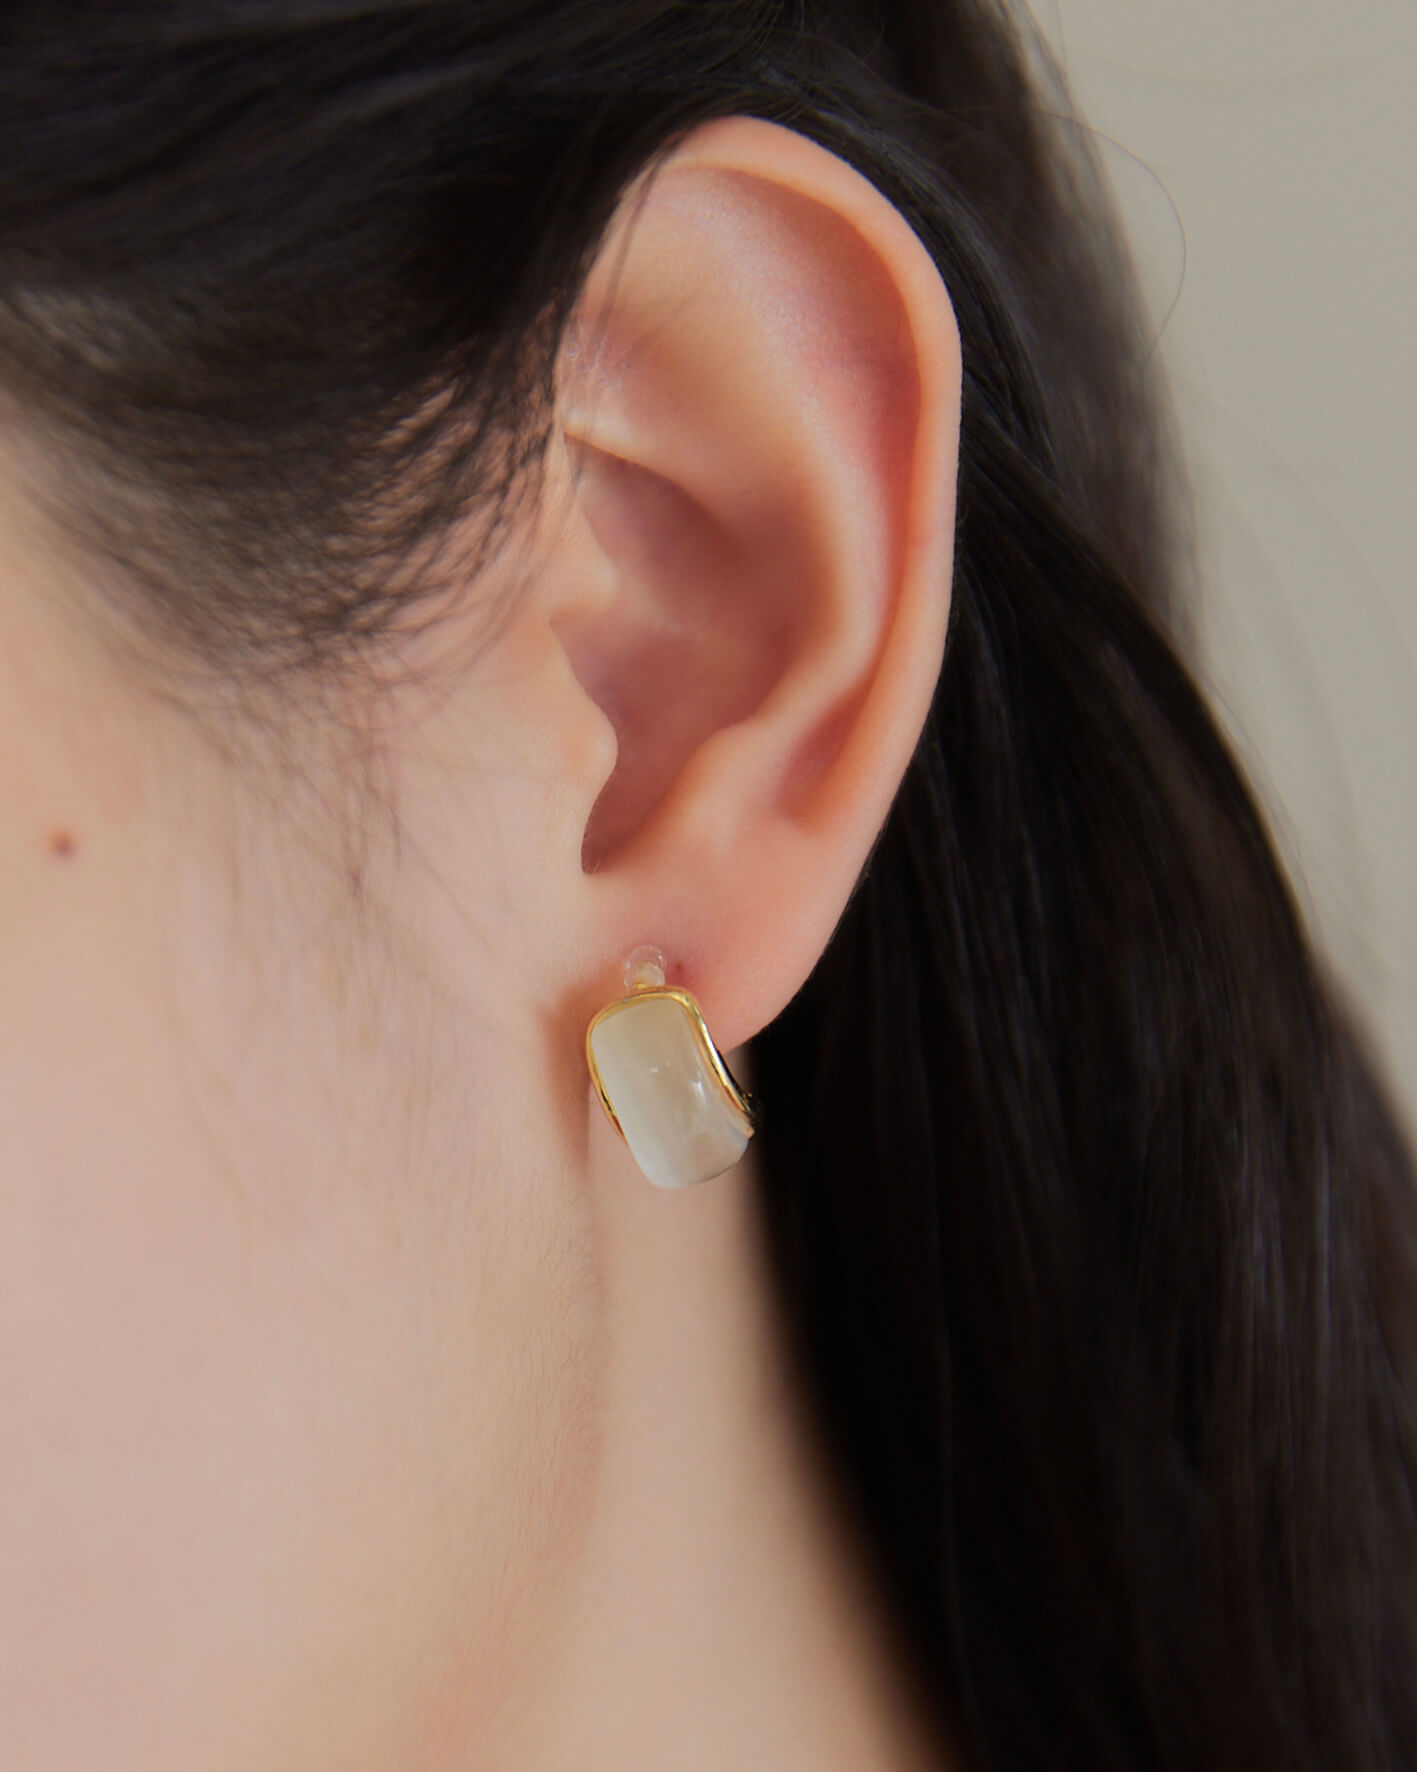 冰封 。矽膠夾式/純銀耳針耳環 - 純銀耳針 聖誕送禮 · 交換禮物專區|$500↑ · 質感百搭專區💎|精選系列|無痛耳夾系列|垂墜耳環系列|人氣熱銷 | Best seller🔥|24hr快速出貨|精選商品．單件7折|聖誕紅區|SALE · 2件8折專區🛒|新品上架 | New Arrival|耳環 | Earrings|耳環類 · 現貨專區|耳環 · 耳針式耳環|耳環 · 垂墜耳環|耳環 · 矽膠無痛夾式耳環